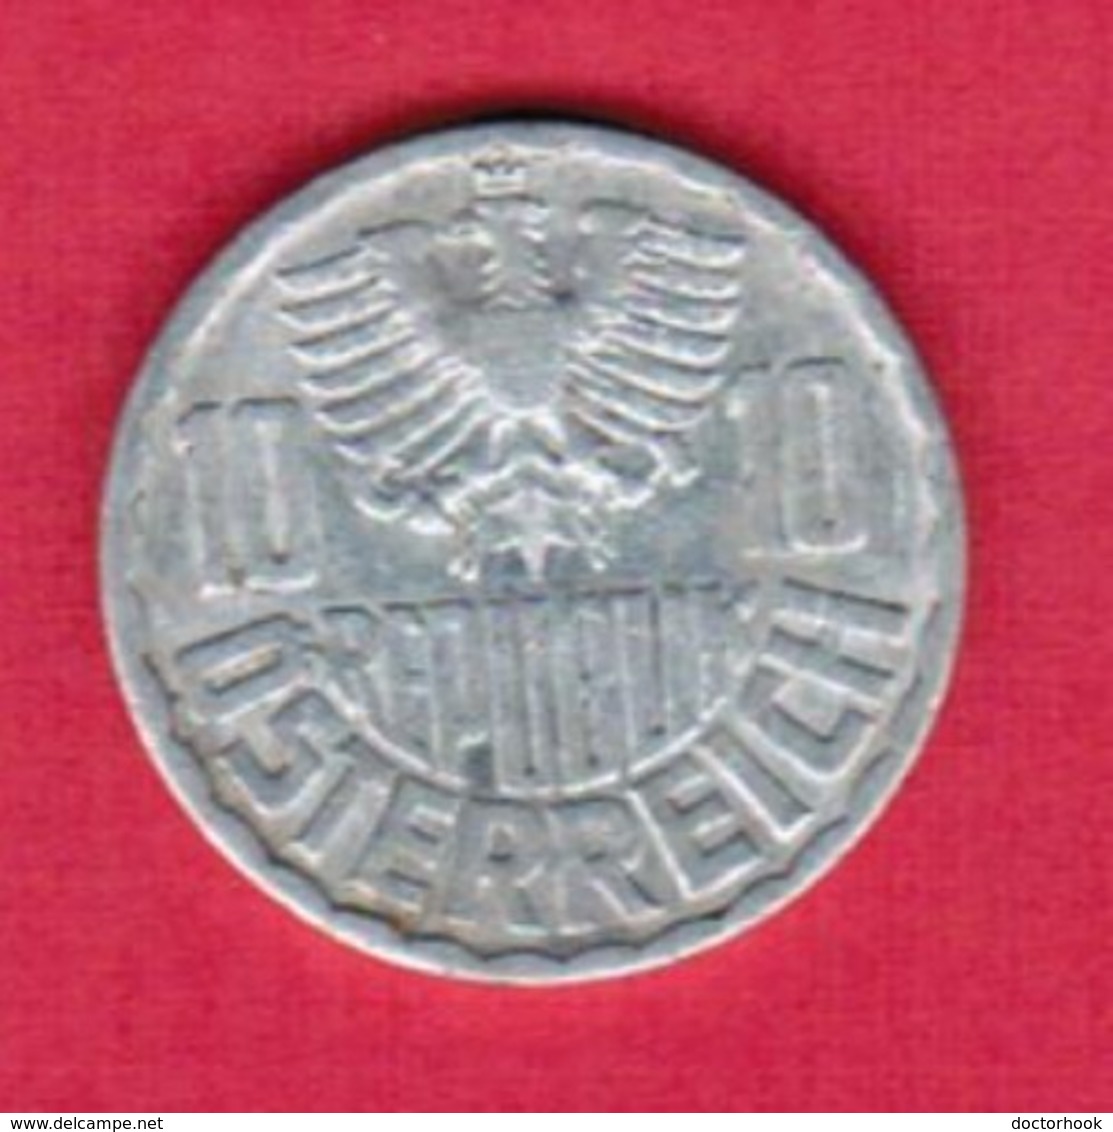 AUSTRIA   10 GROSCHEN 1963 (KM # 2878) #5140 - Austria